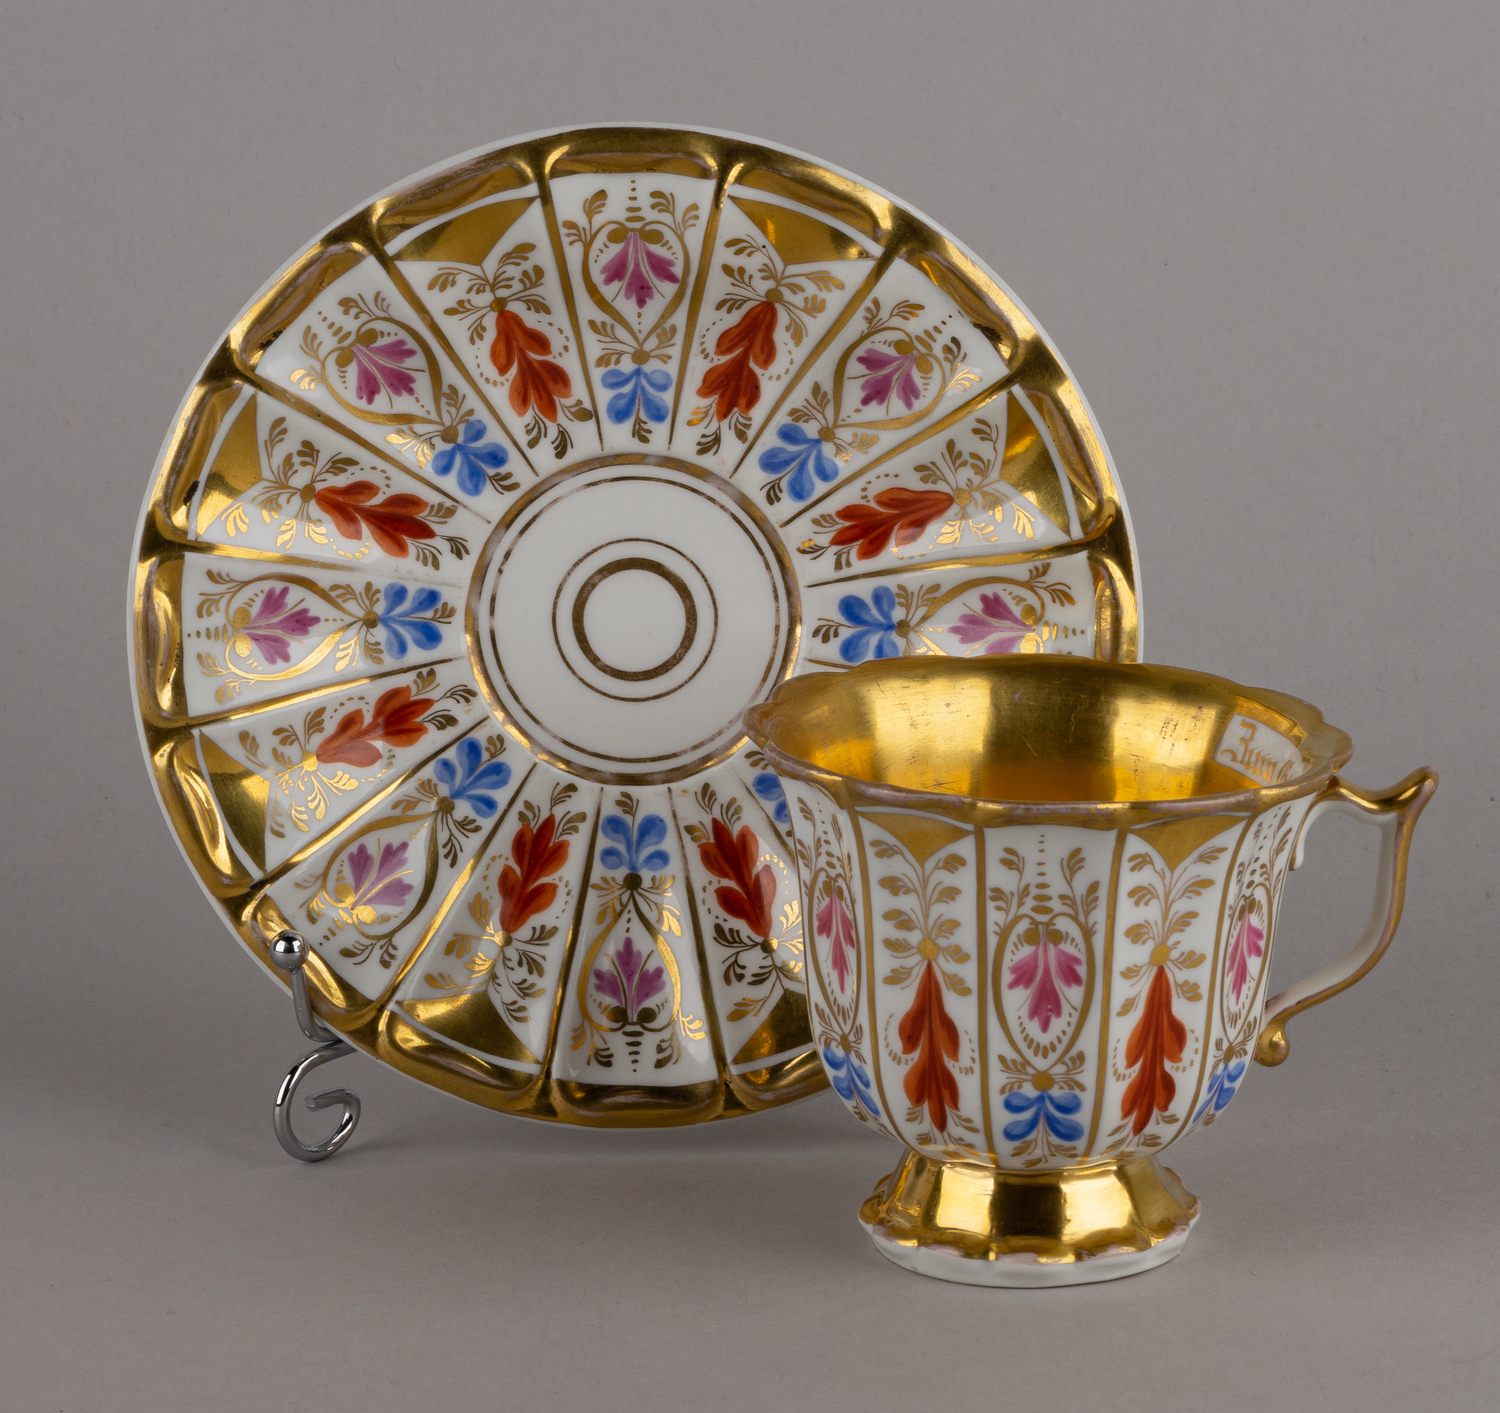 (КPМ) Чашка с блюдцем  «В день рождения». <br>Германия, Берлинская Королевская мануфактура (KPM Berlin), около 1837-го года.